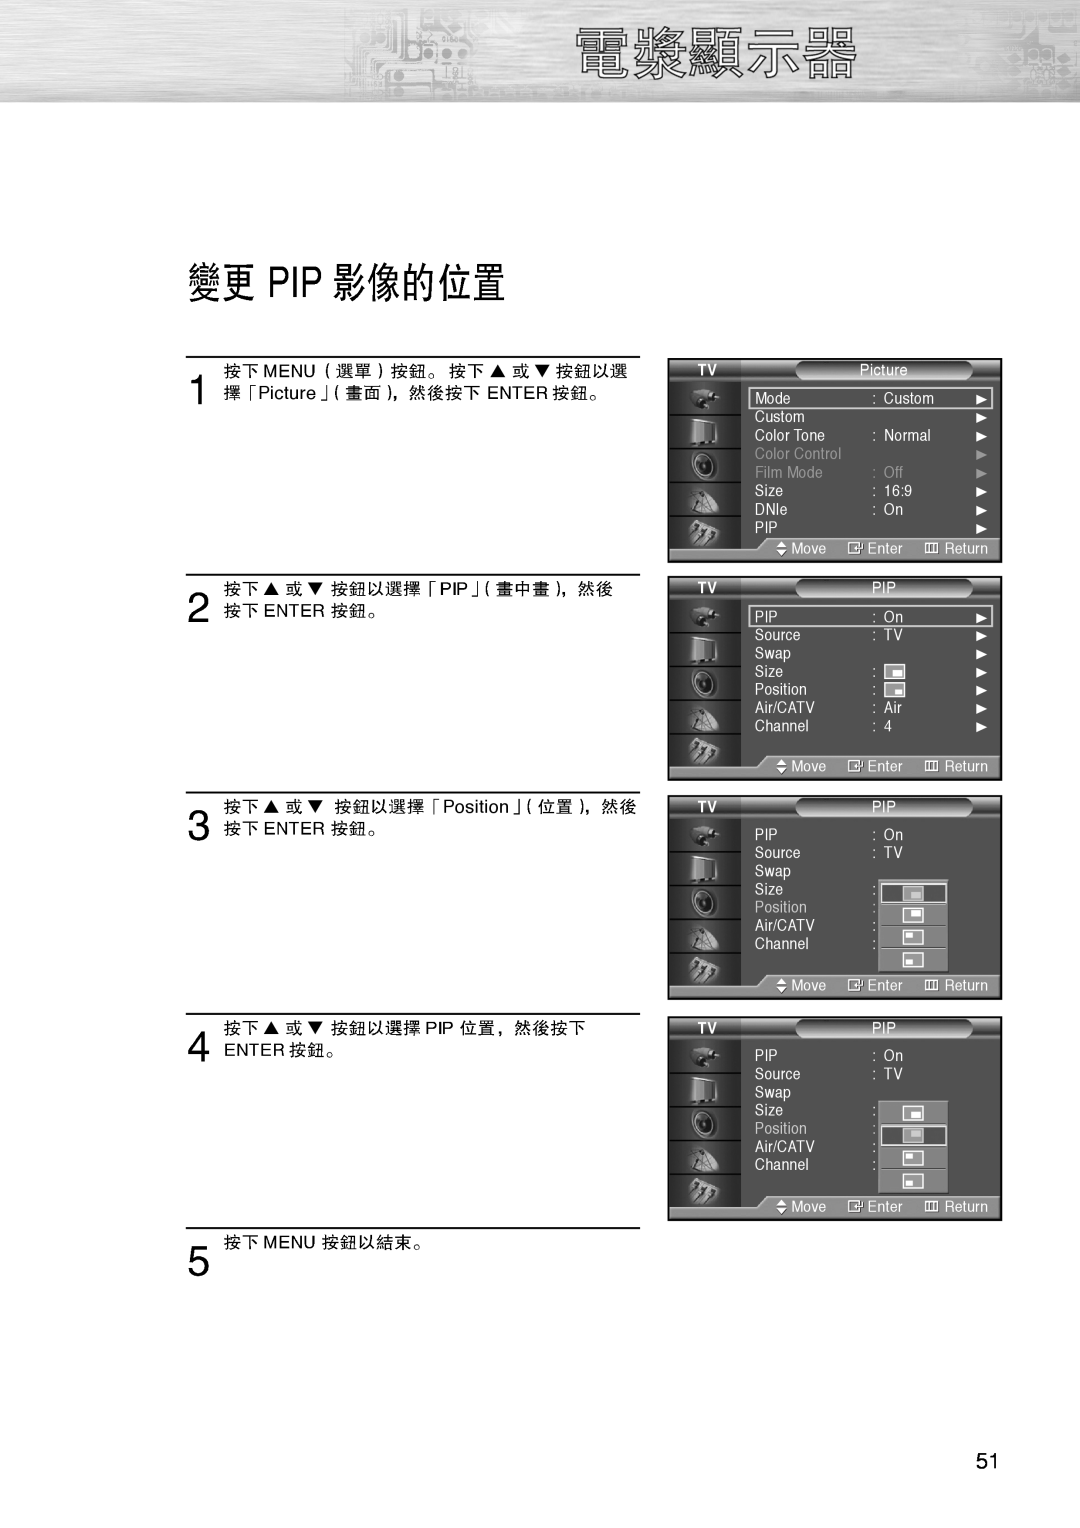 Samsung PL-42D4S manual Picture, Position, Color Control, Film Mode 